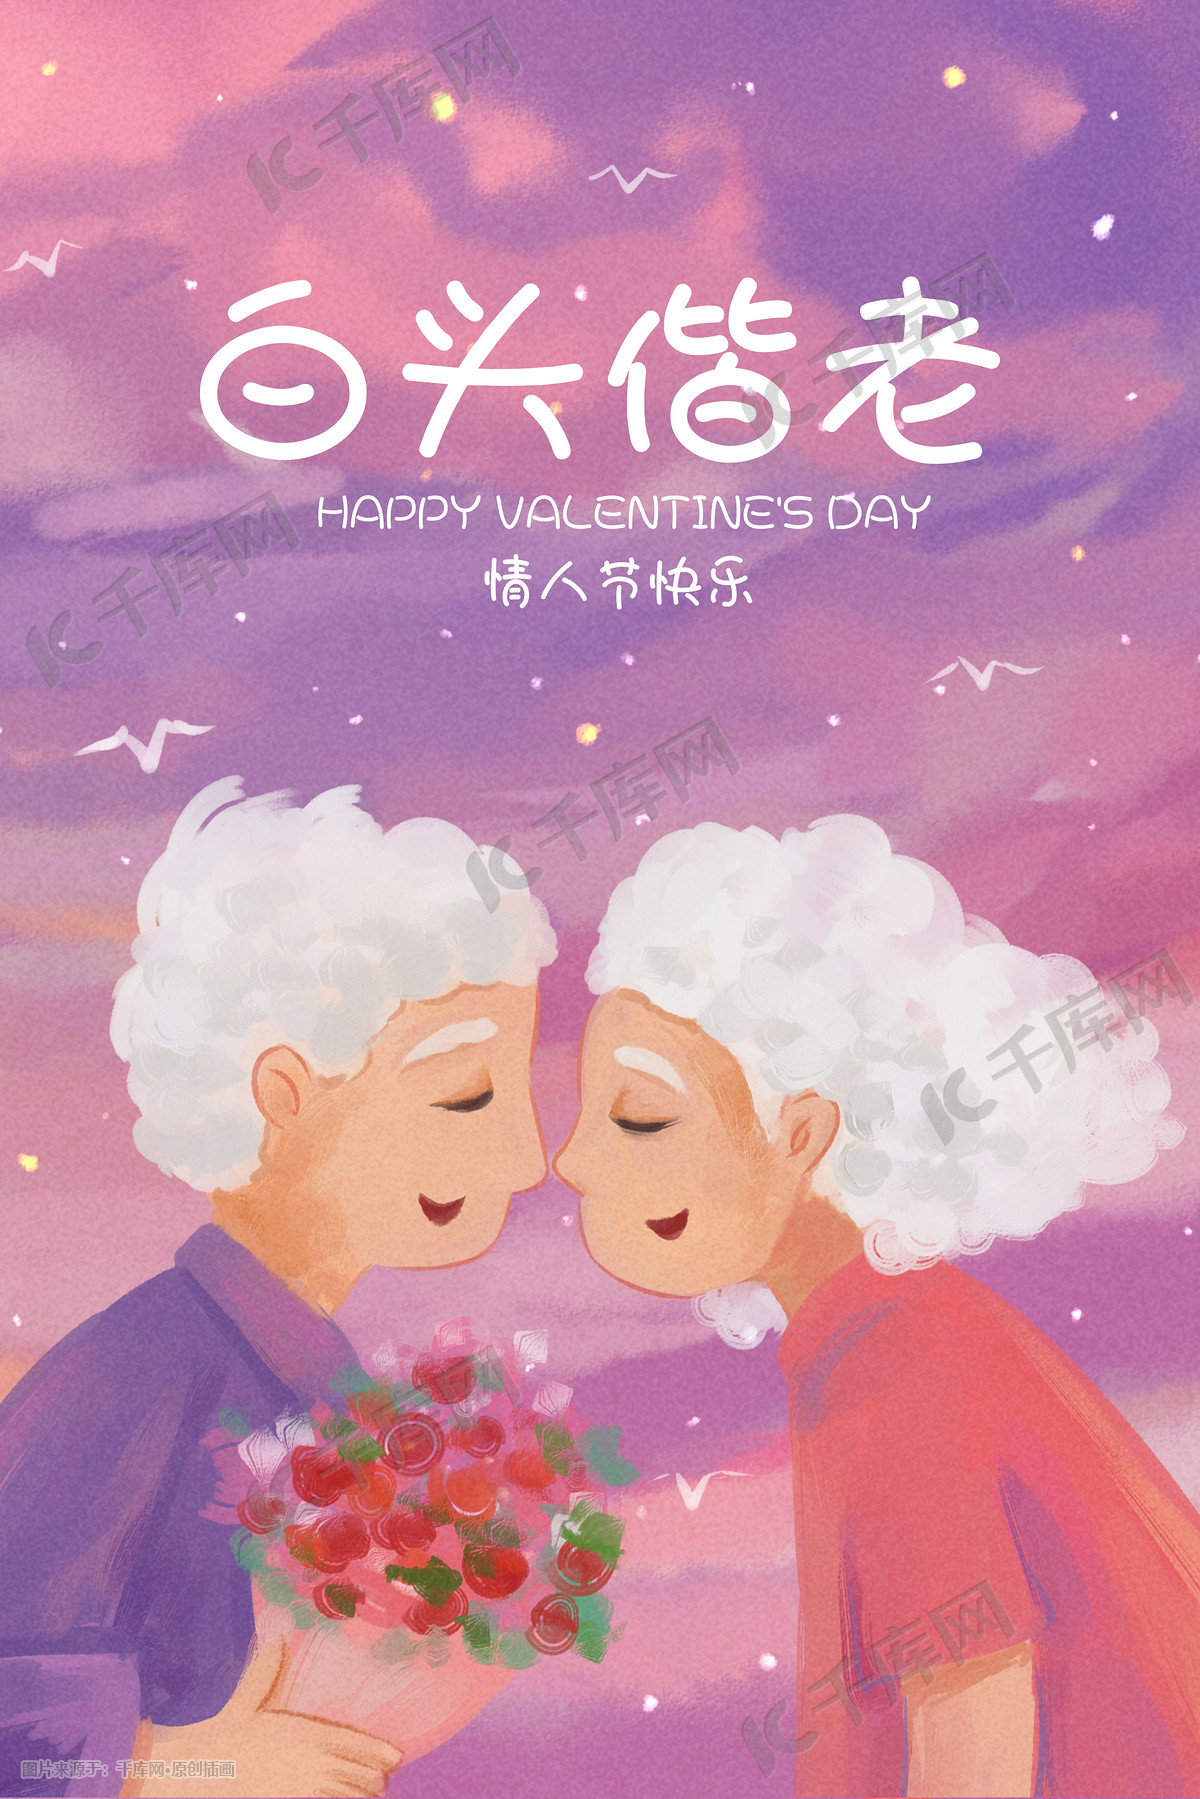 重阳节生活服务养老院之关爱老人公益海报图片下载 - 觅知网